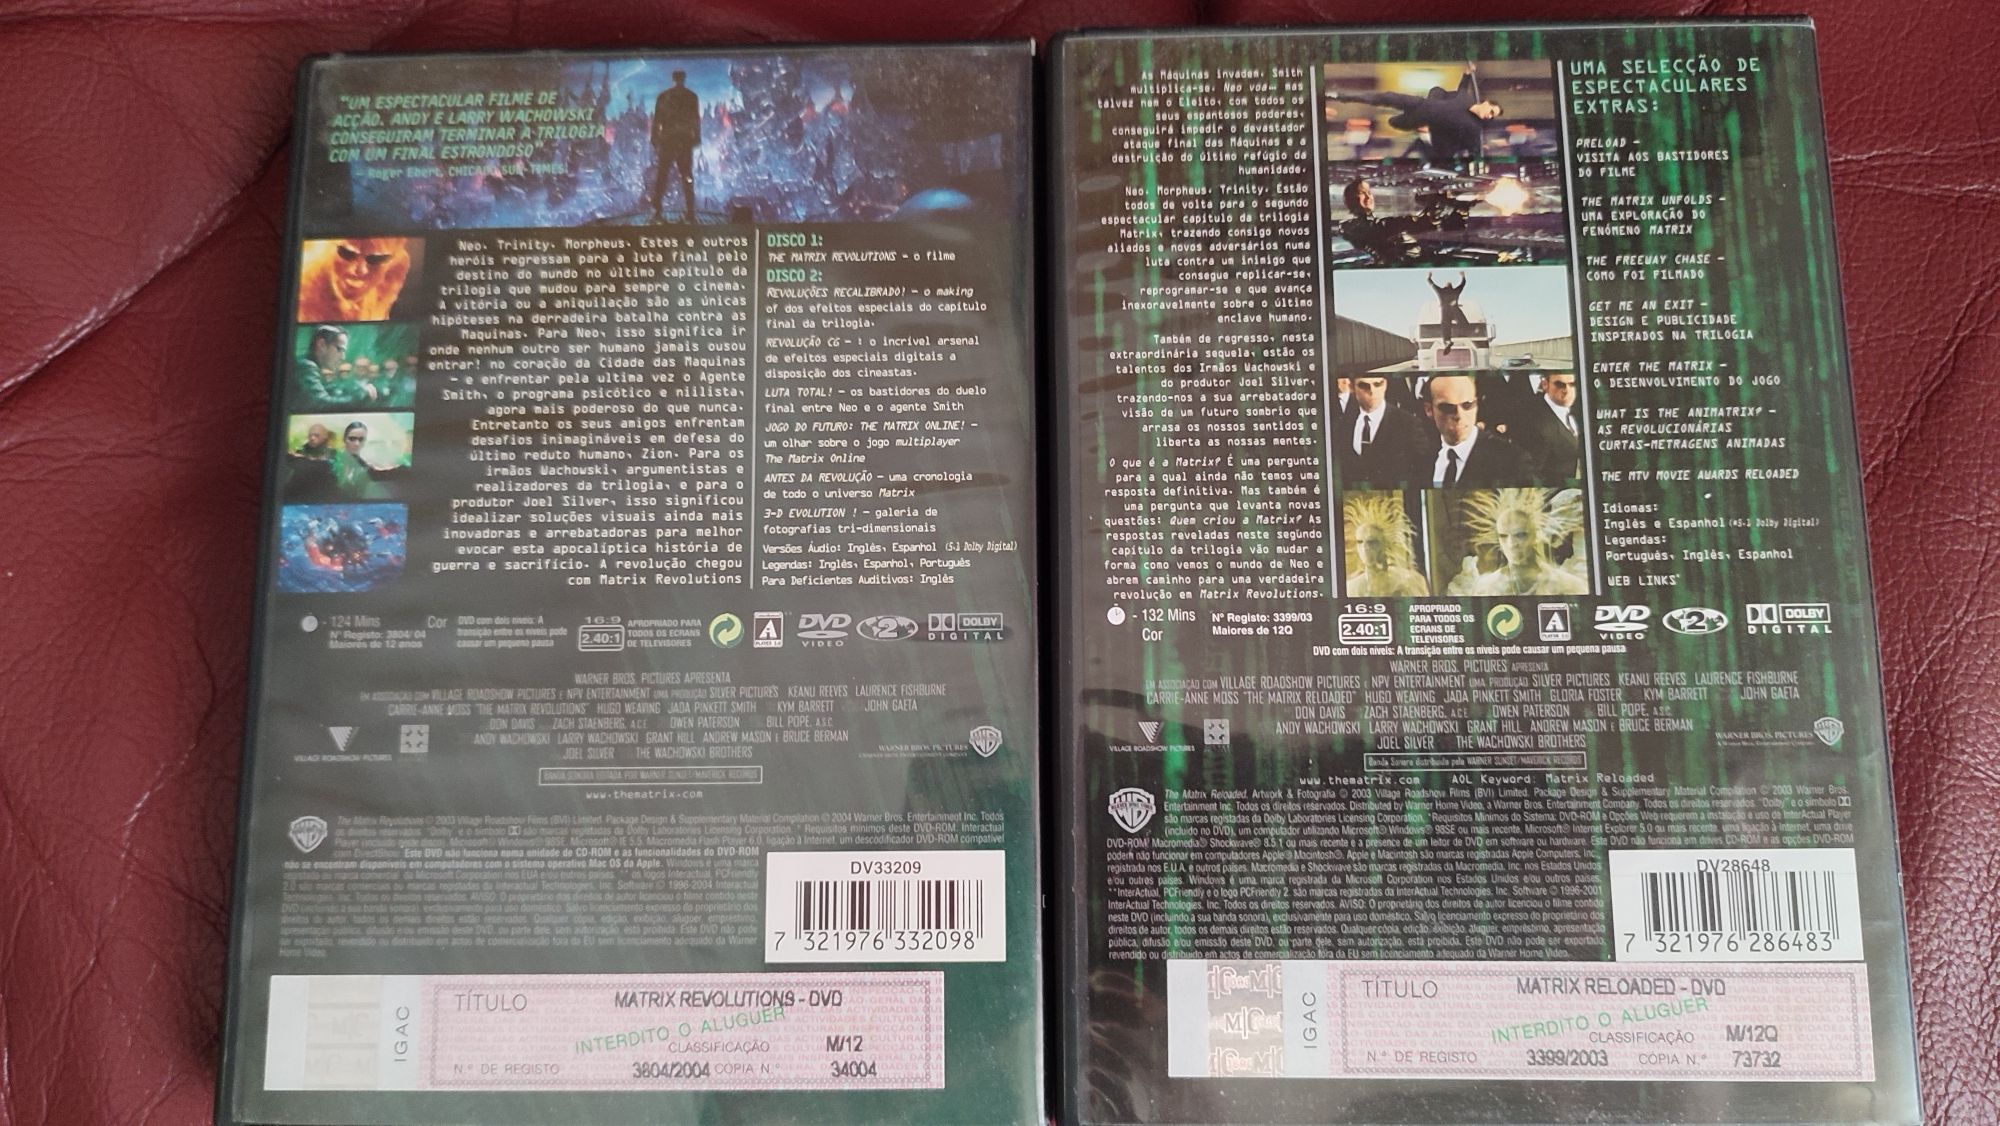 Matrix Revolutions / Matrix Reloaded DVDs